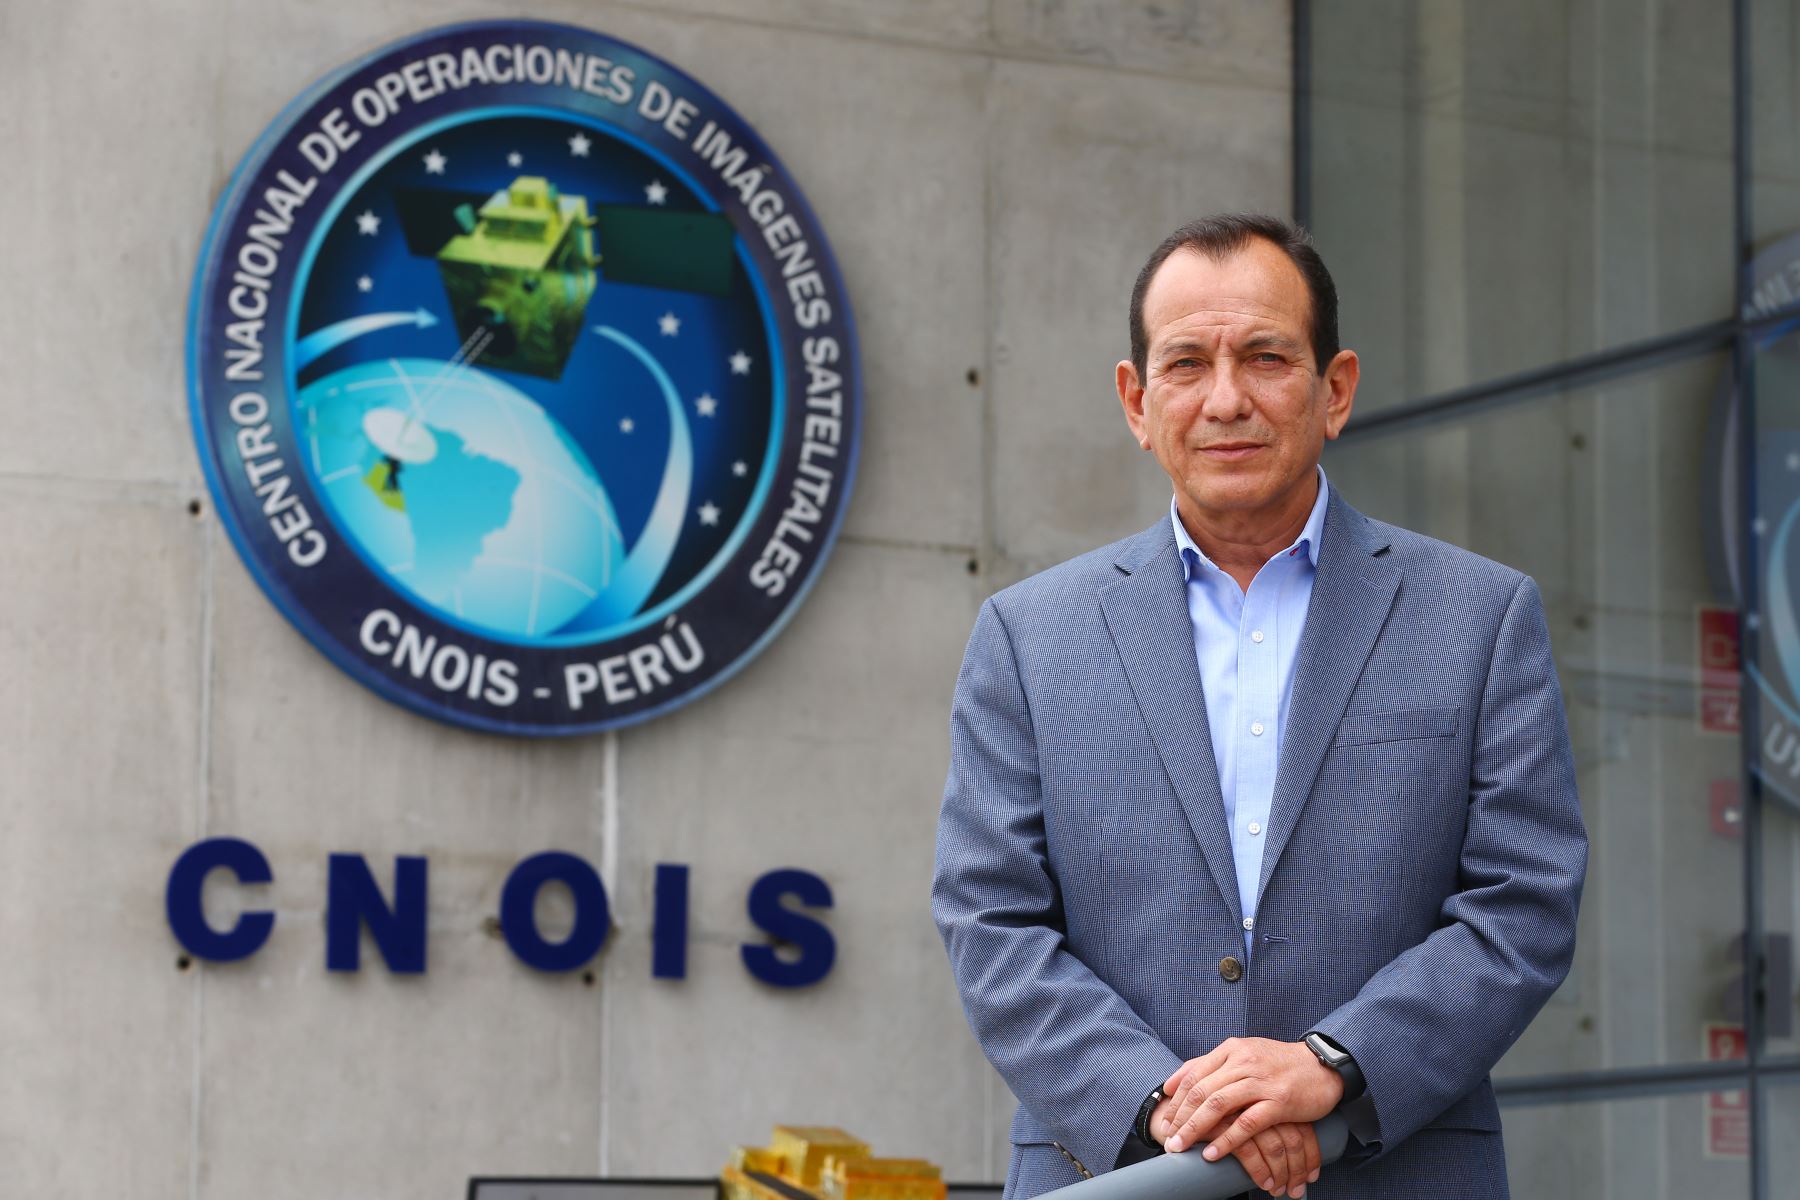 Hace siete años, Perú ingresó a la era espacial con la puesta en órbita del satélite de observación de la Tierra de alta resolución, PerúSAT-1. Foto: ANDINA/Eddy Ramos